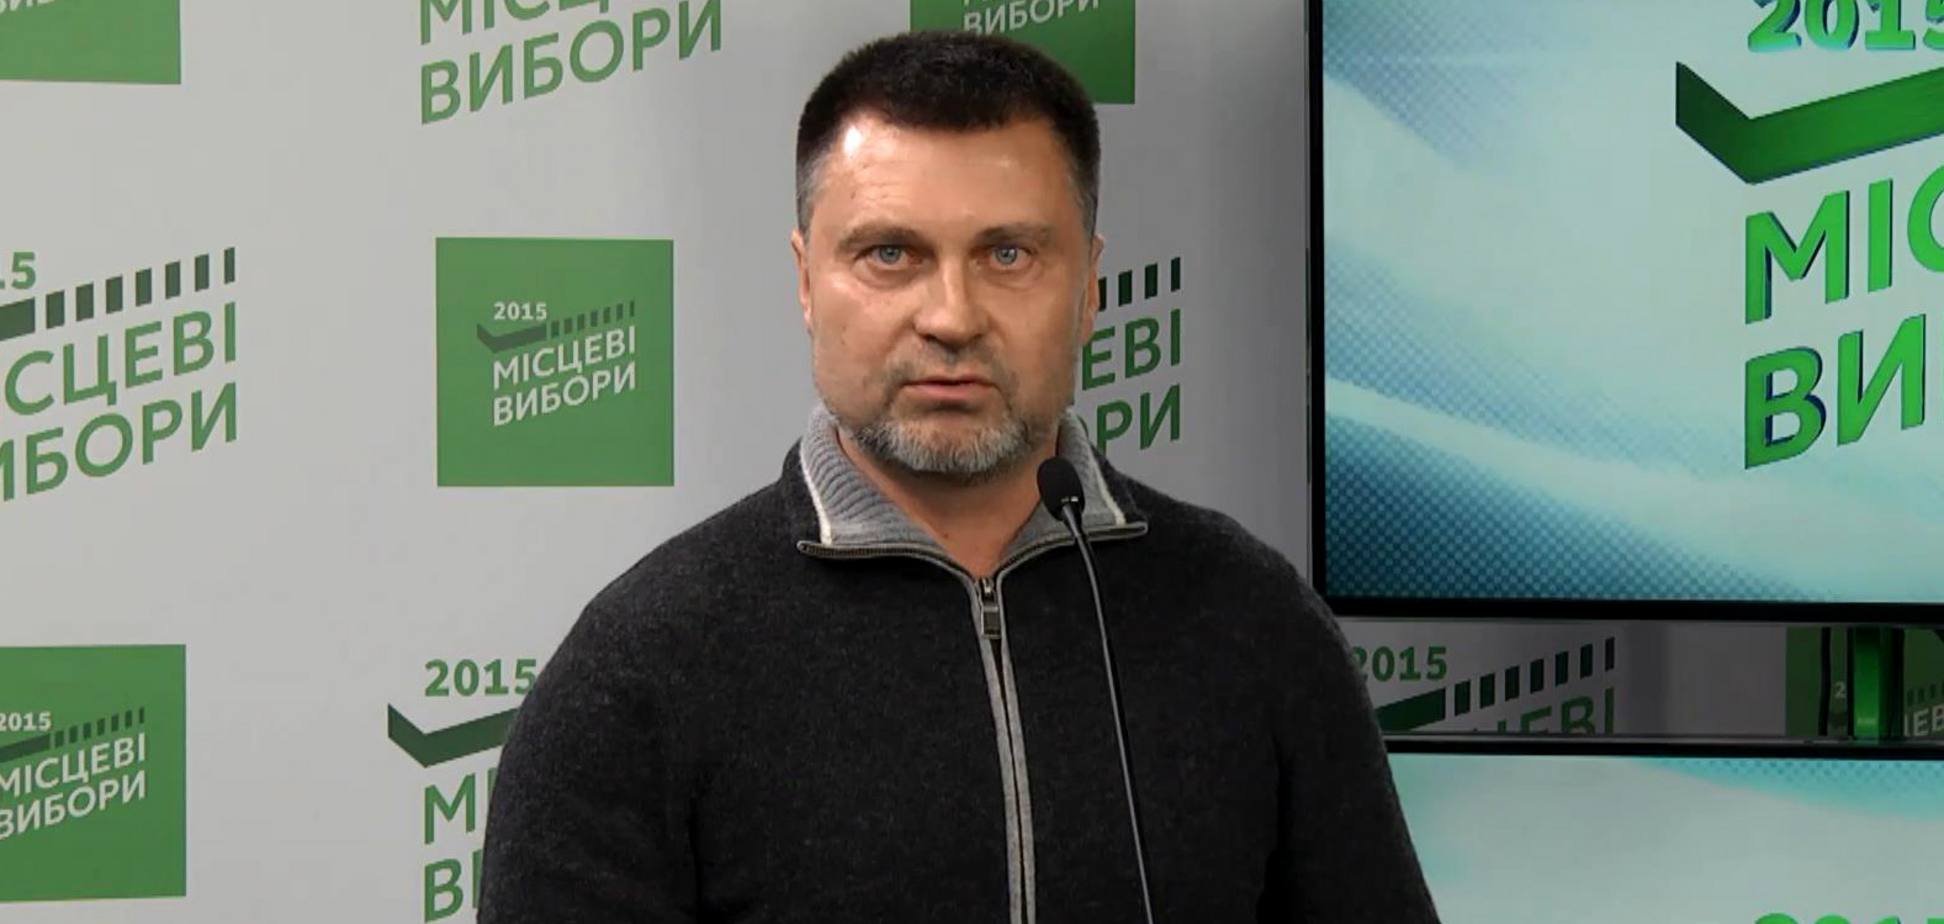 Був головою Київської облради й соратником Тимошенко: чим відомий Майбоженко, який п'яним в'їхав у натовп автівкою